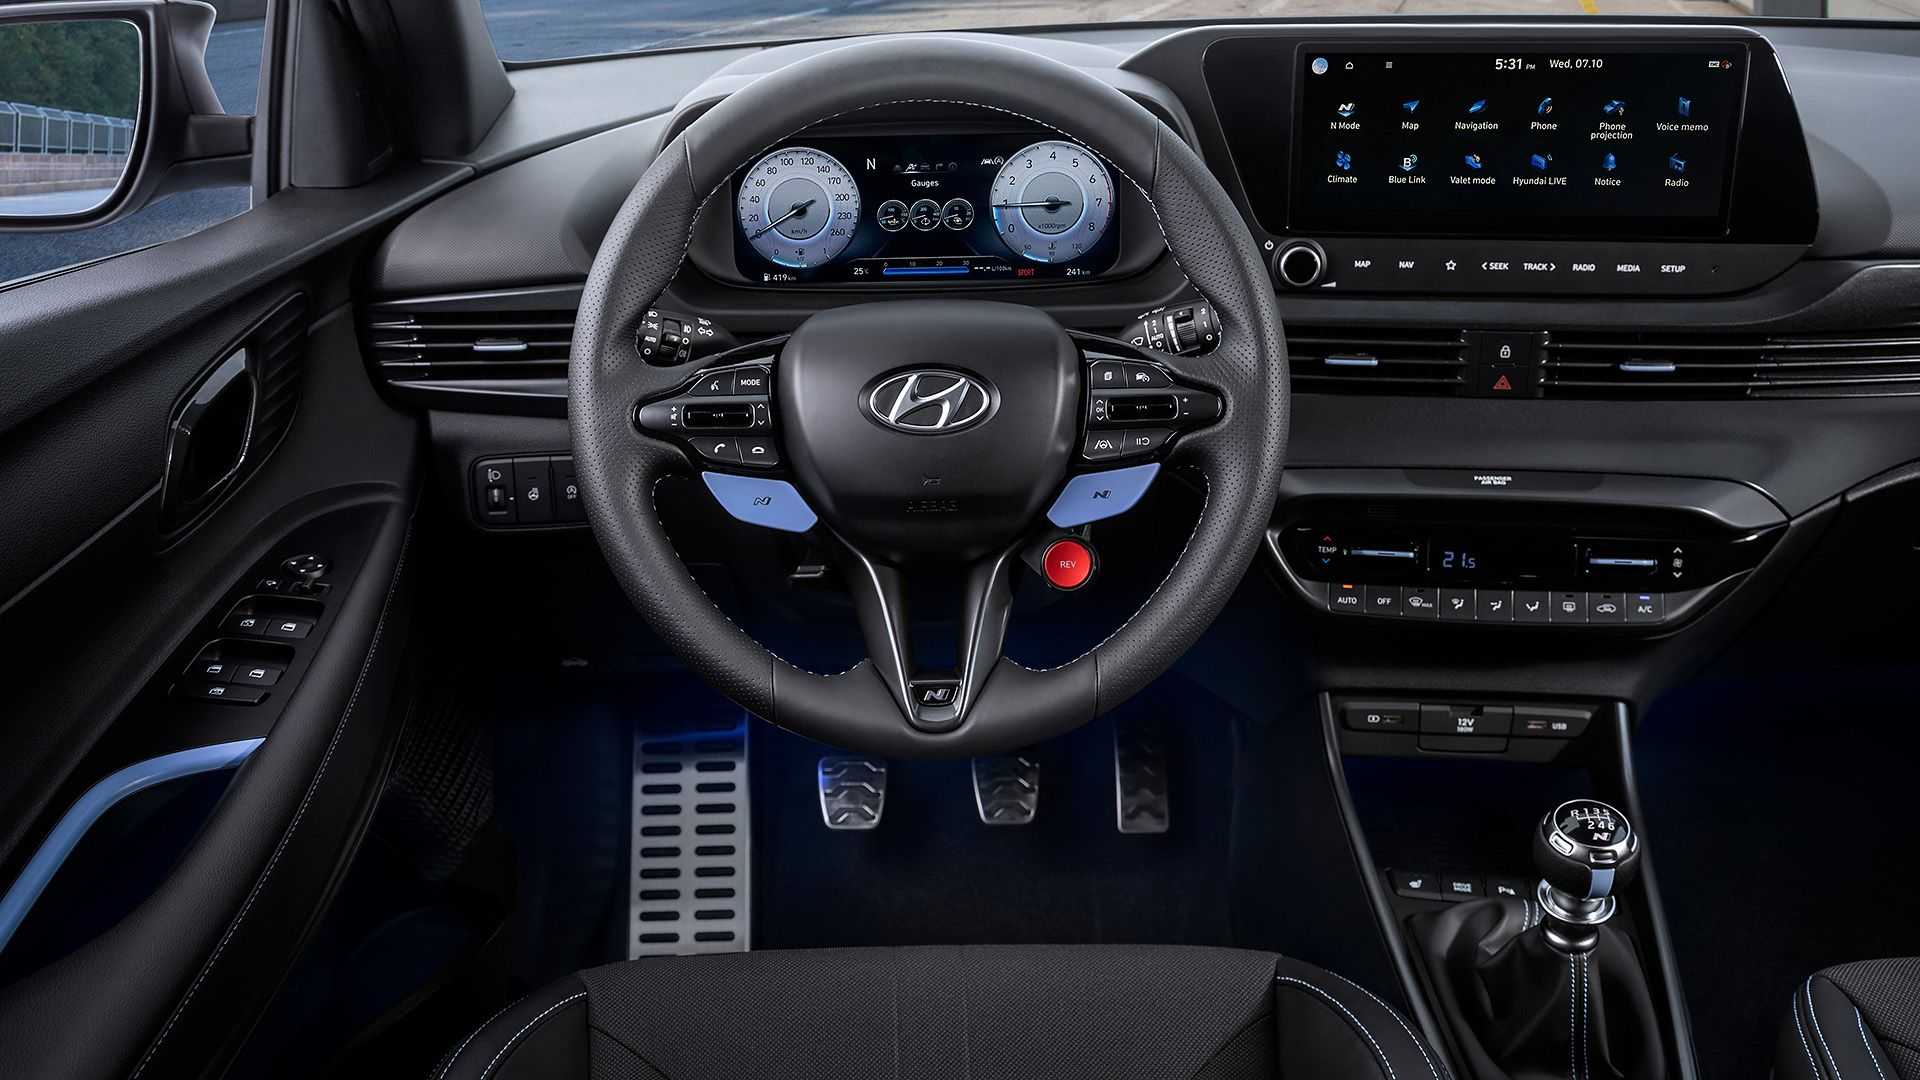 ¡Oficial! El Hyundai i20 N 2021 tiene 204 CV, caja de cambios manual y una estética que no pasa desapercibida